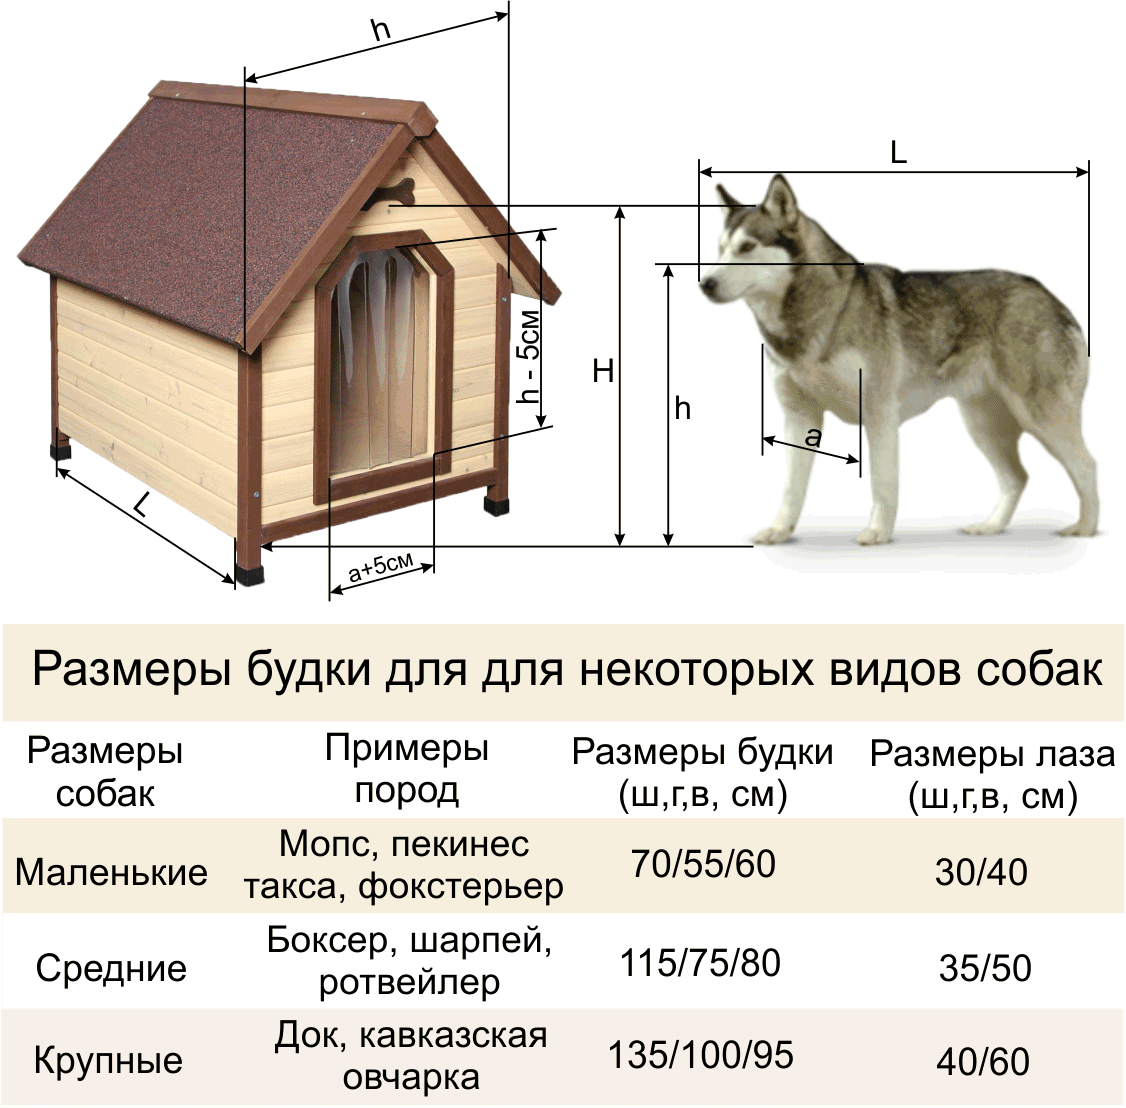 Чертежи с размерами будки для собаки – фото и схема сборки конуры для питомца